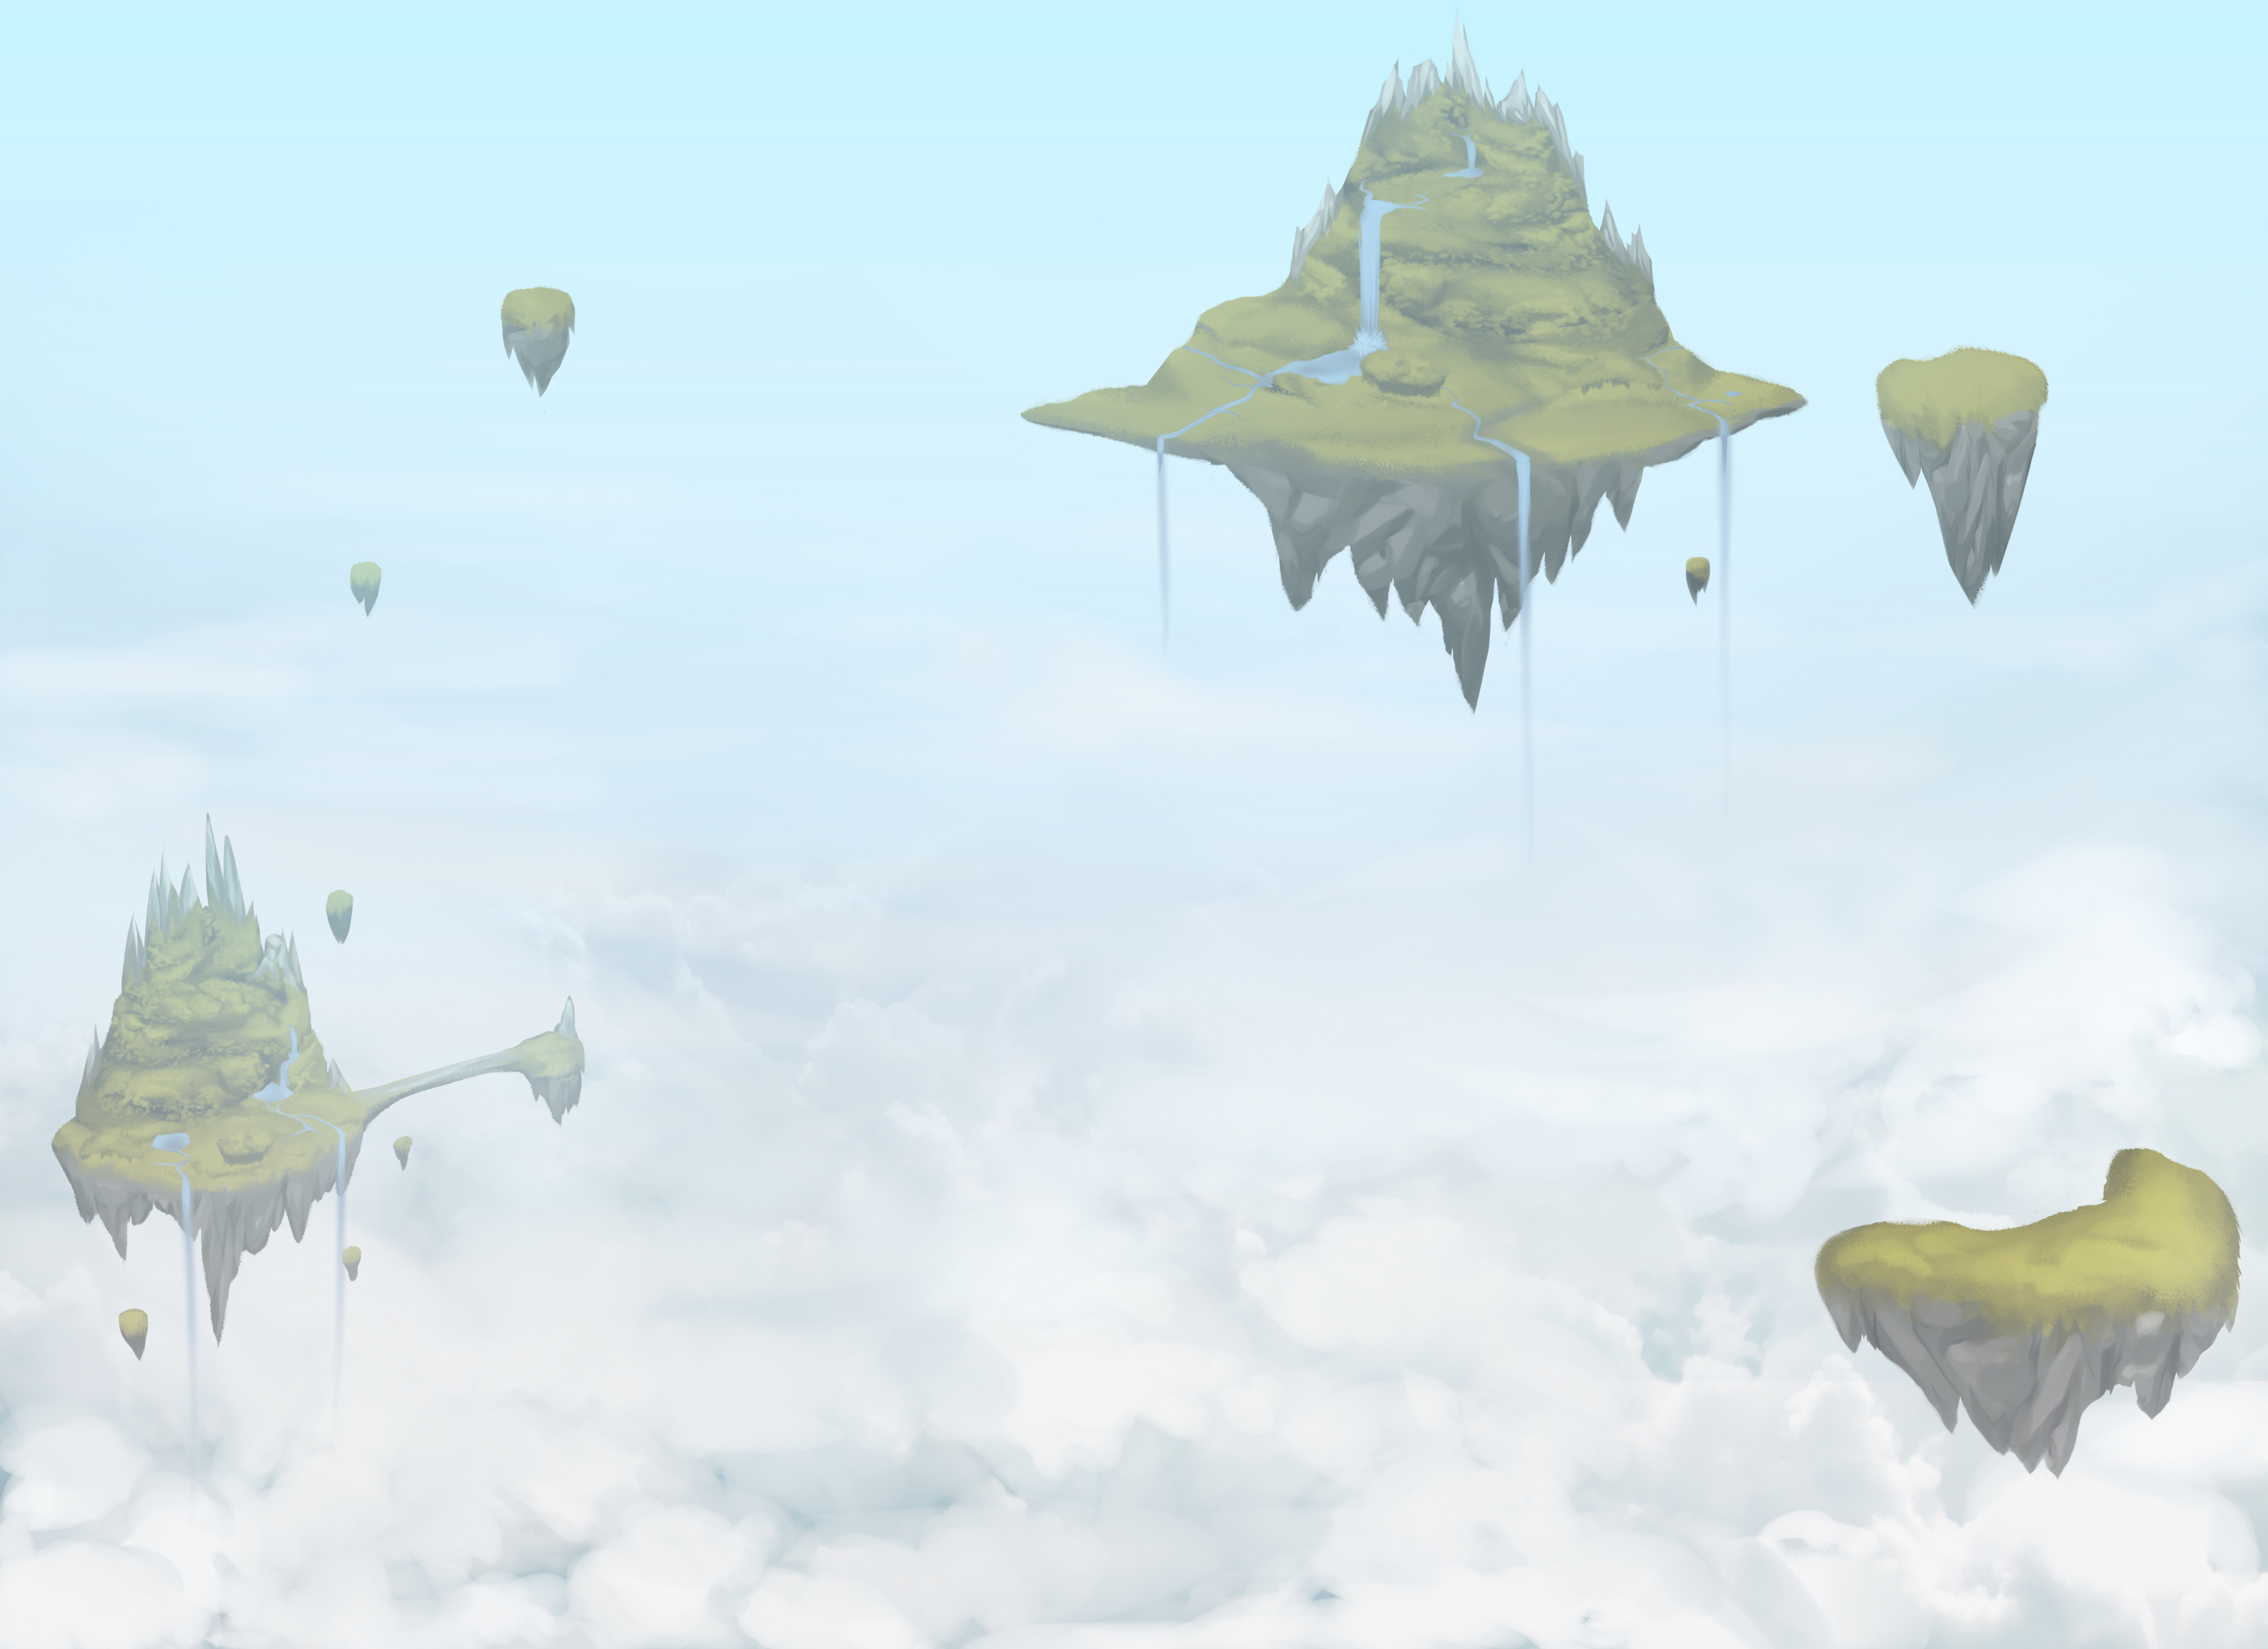 Hình ảnh Đảo Sky - Arcane Souls trên Mod DB sẽ làm nức lòng game thủ bởi cảnh quan đẹp tuyệt vời và bầu không khí đầy ma mị. Hãy tìm hiểu thêm về trò chơi này và cùng khám phá những bí ẩn đang chờ đón người chơi!